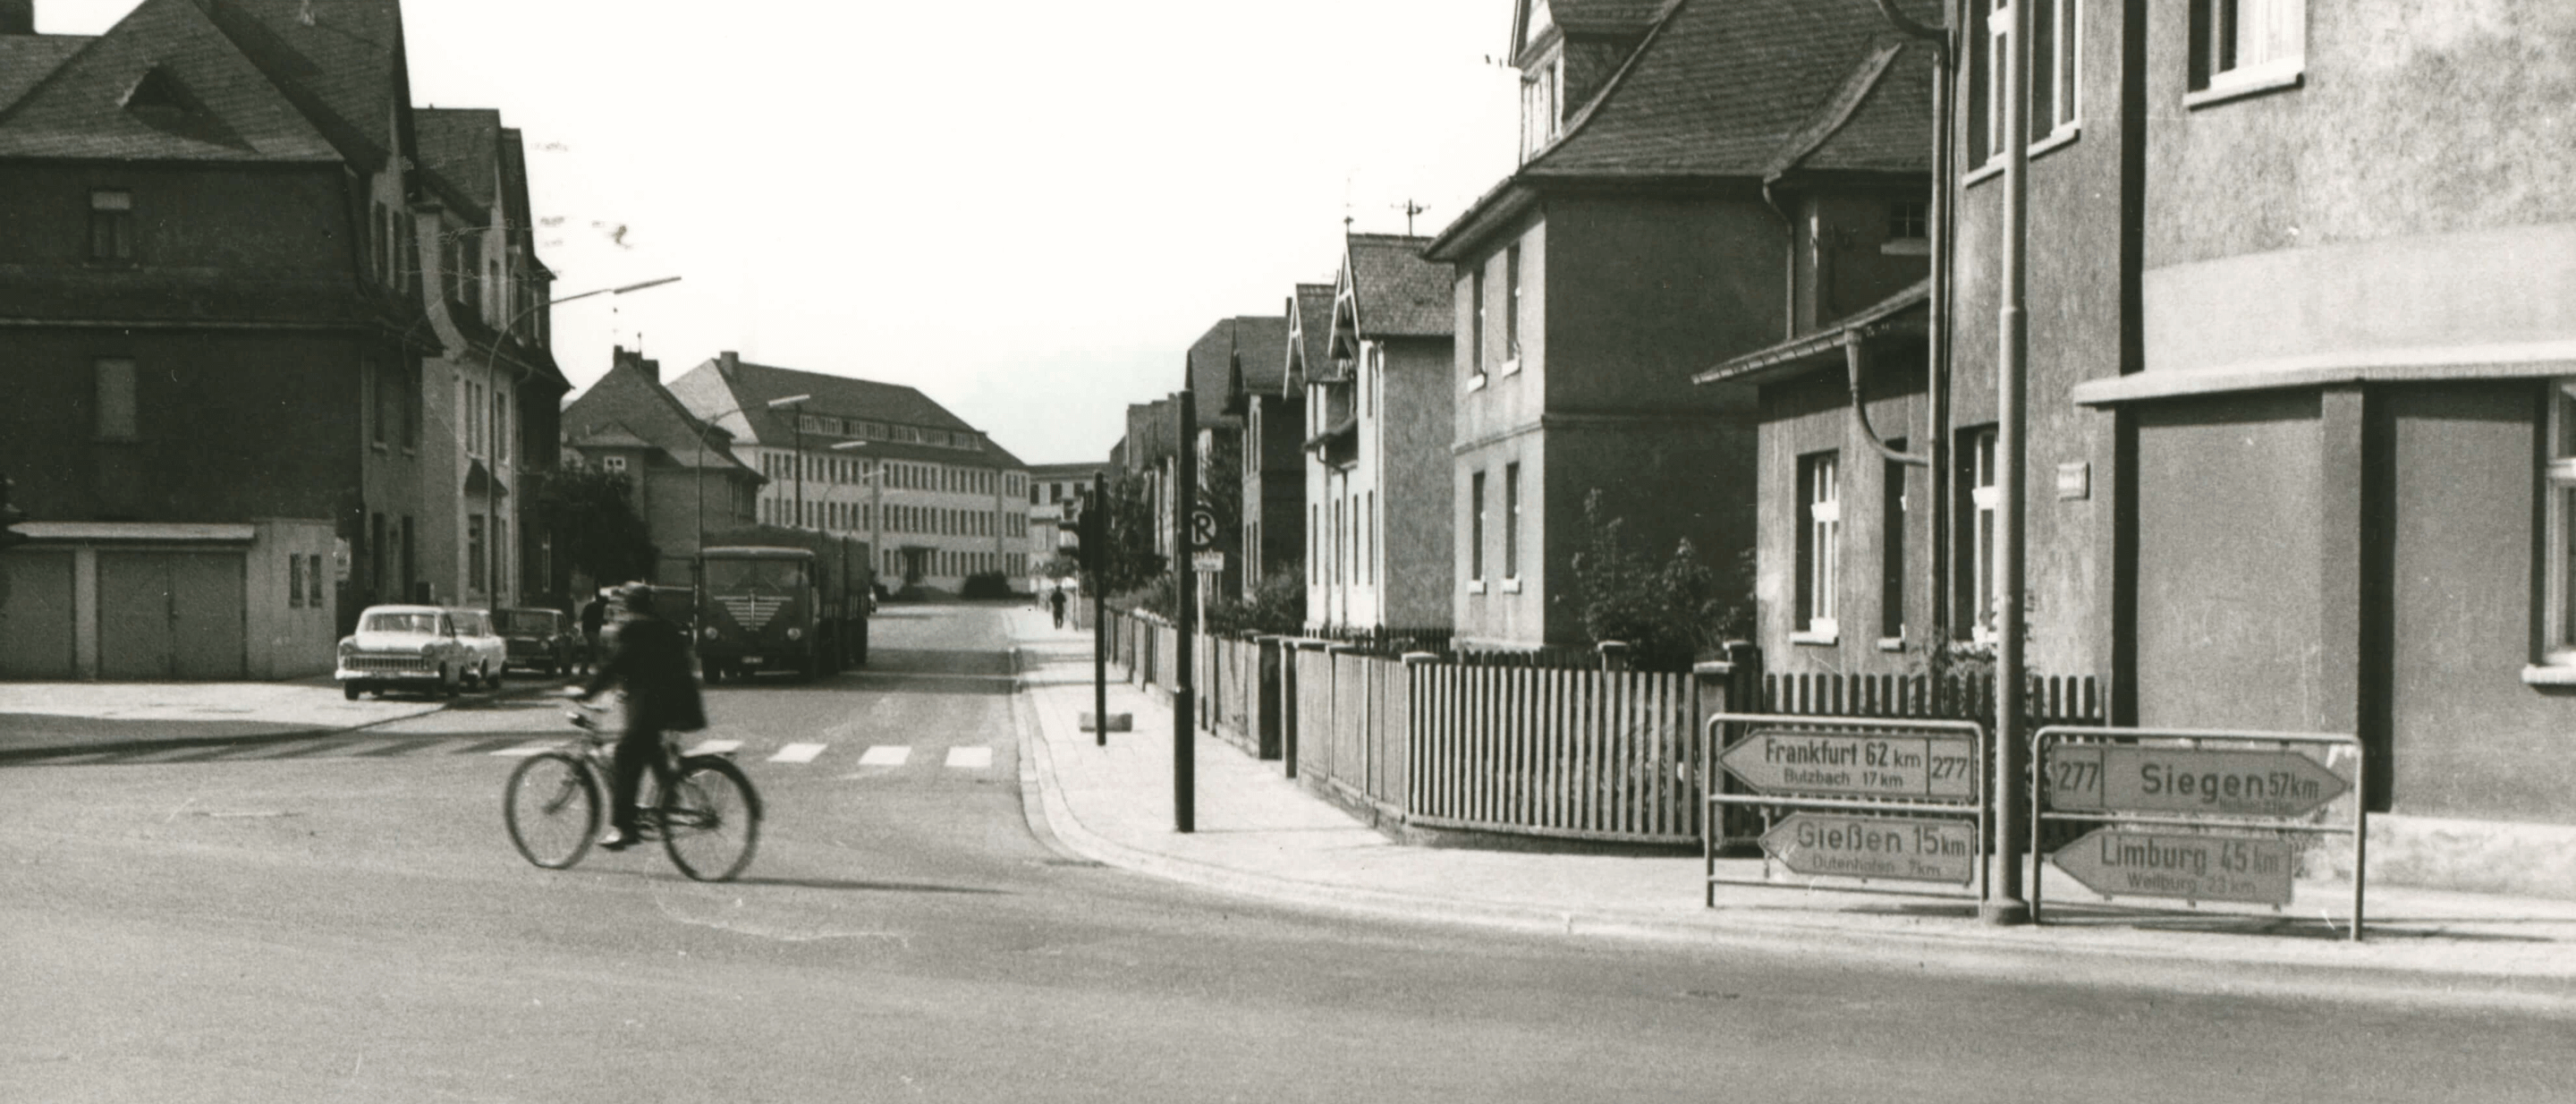 Ein historisches Schwarz-Weiß-Foto, das eine Straßenecke mit Häuserreihen und einem vorbeifahrenden Mann auf einem Fahrrad zeigt.